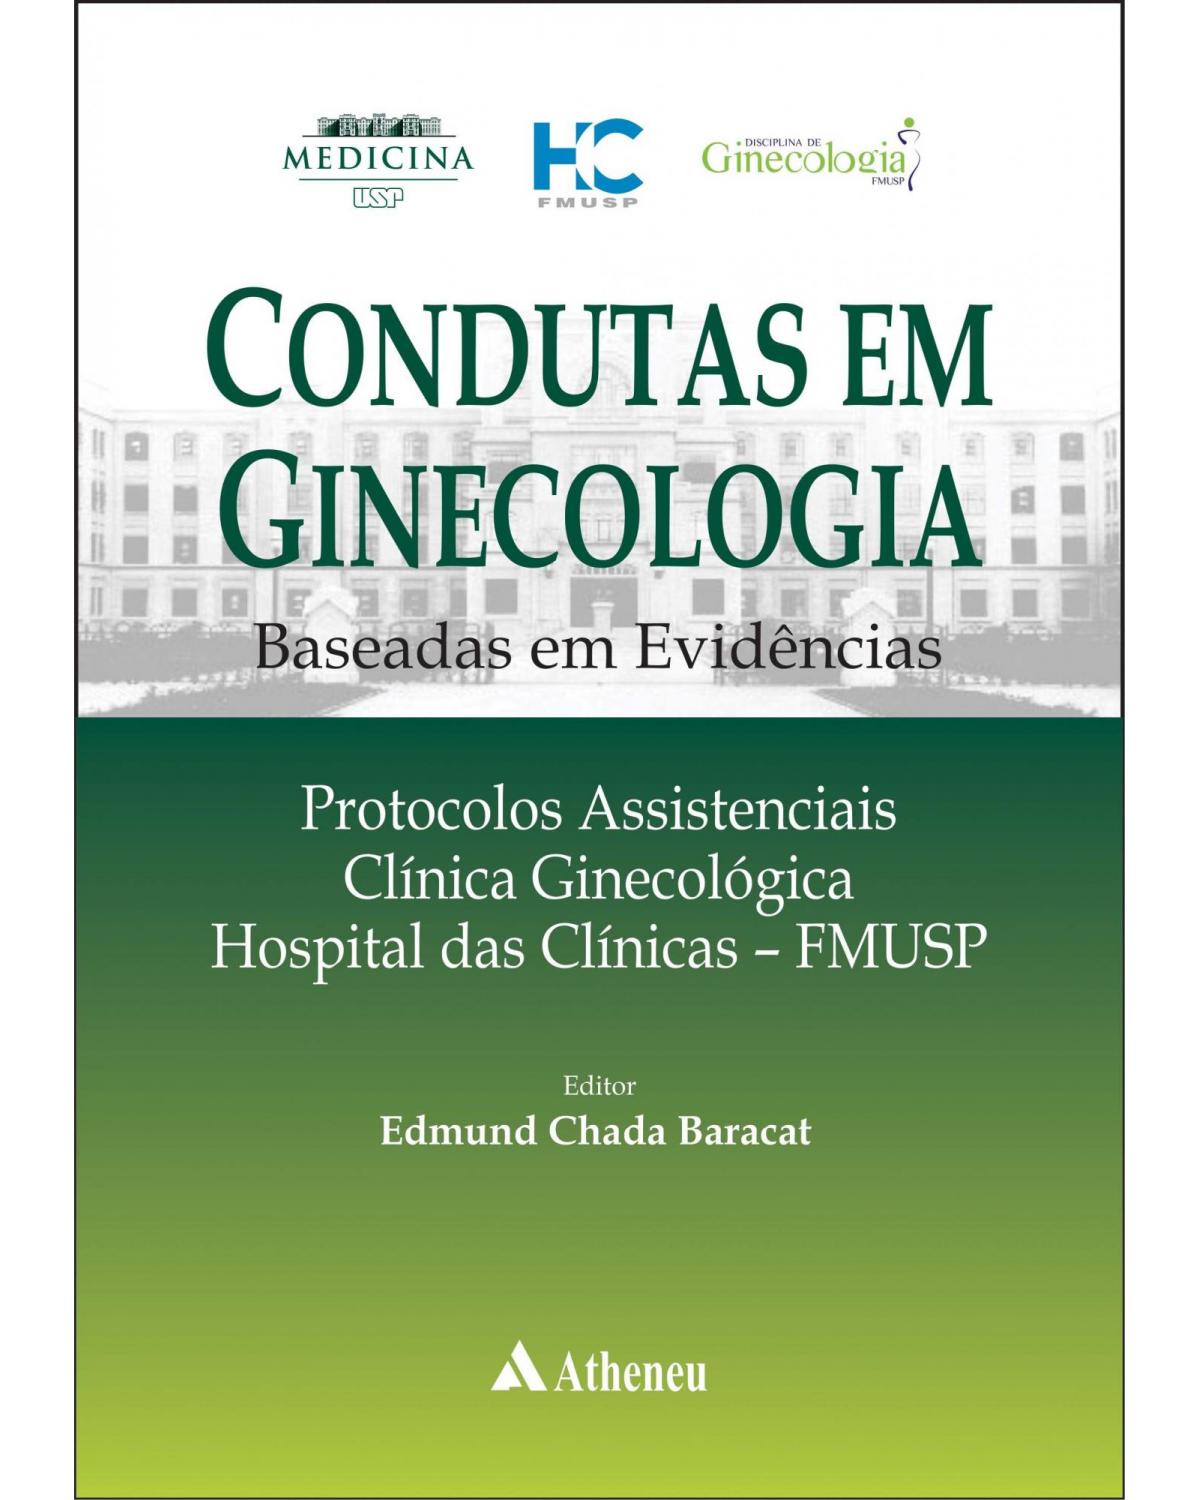 Condutas em ginecologia - baseada em evidências - Protocolos assistenciais - Clínica ginecológica Hospital das Clinicas - FMUSP - 1ª Edição | 2016